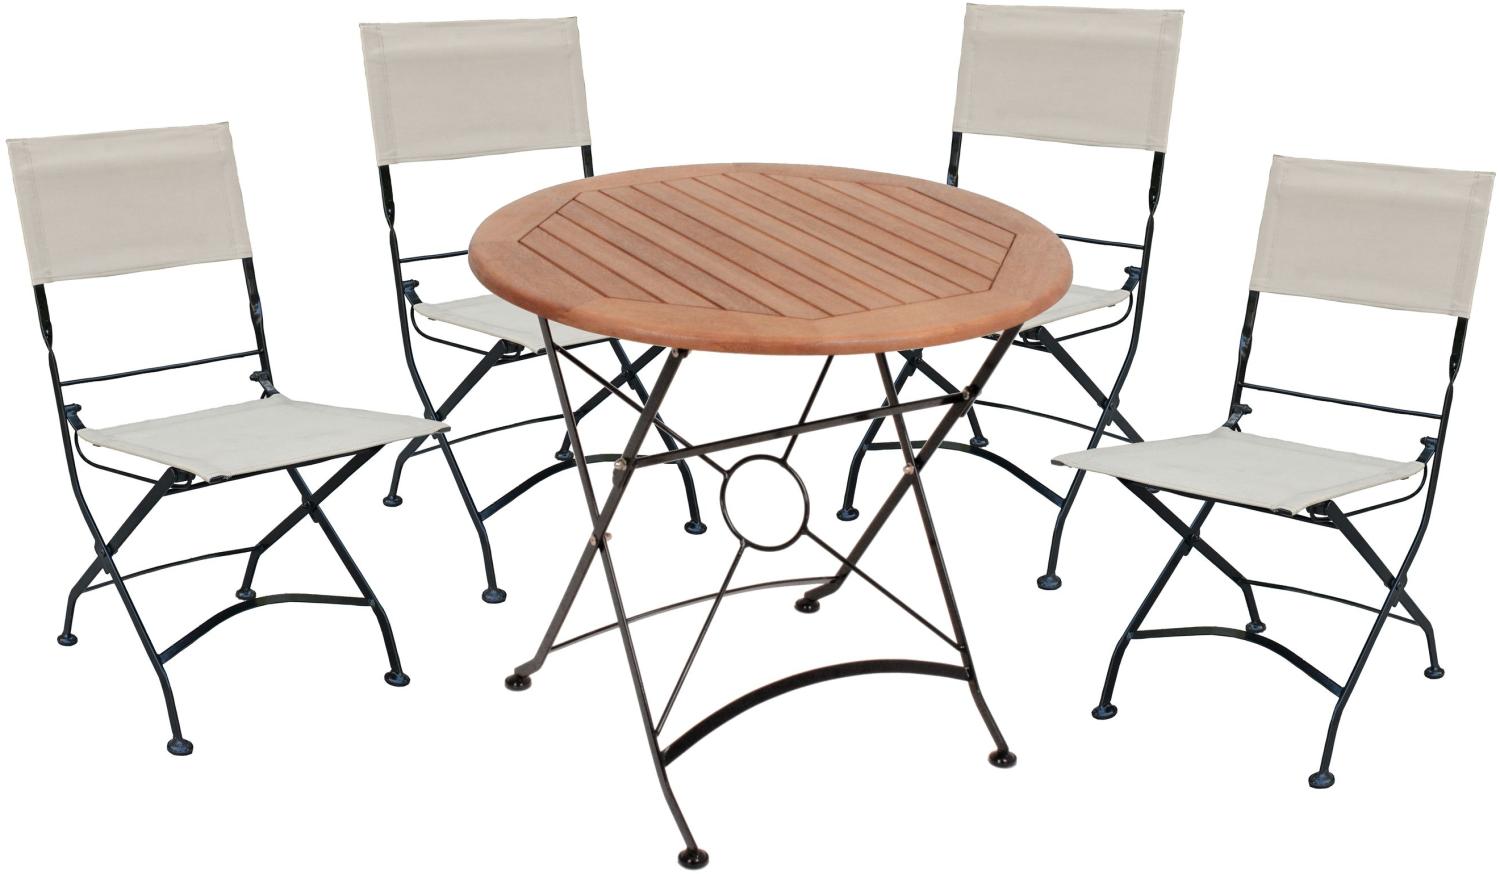 5tlg. Holz Tischgruppe Gartenmöbel Gartentisch Stuhl Garten Klappstuhl Tisch Bild 1